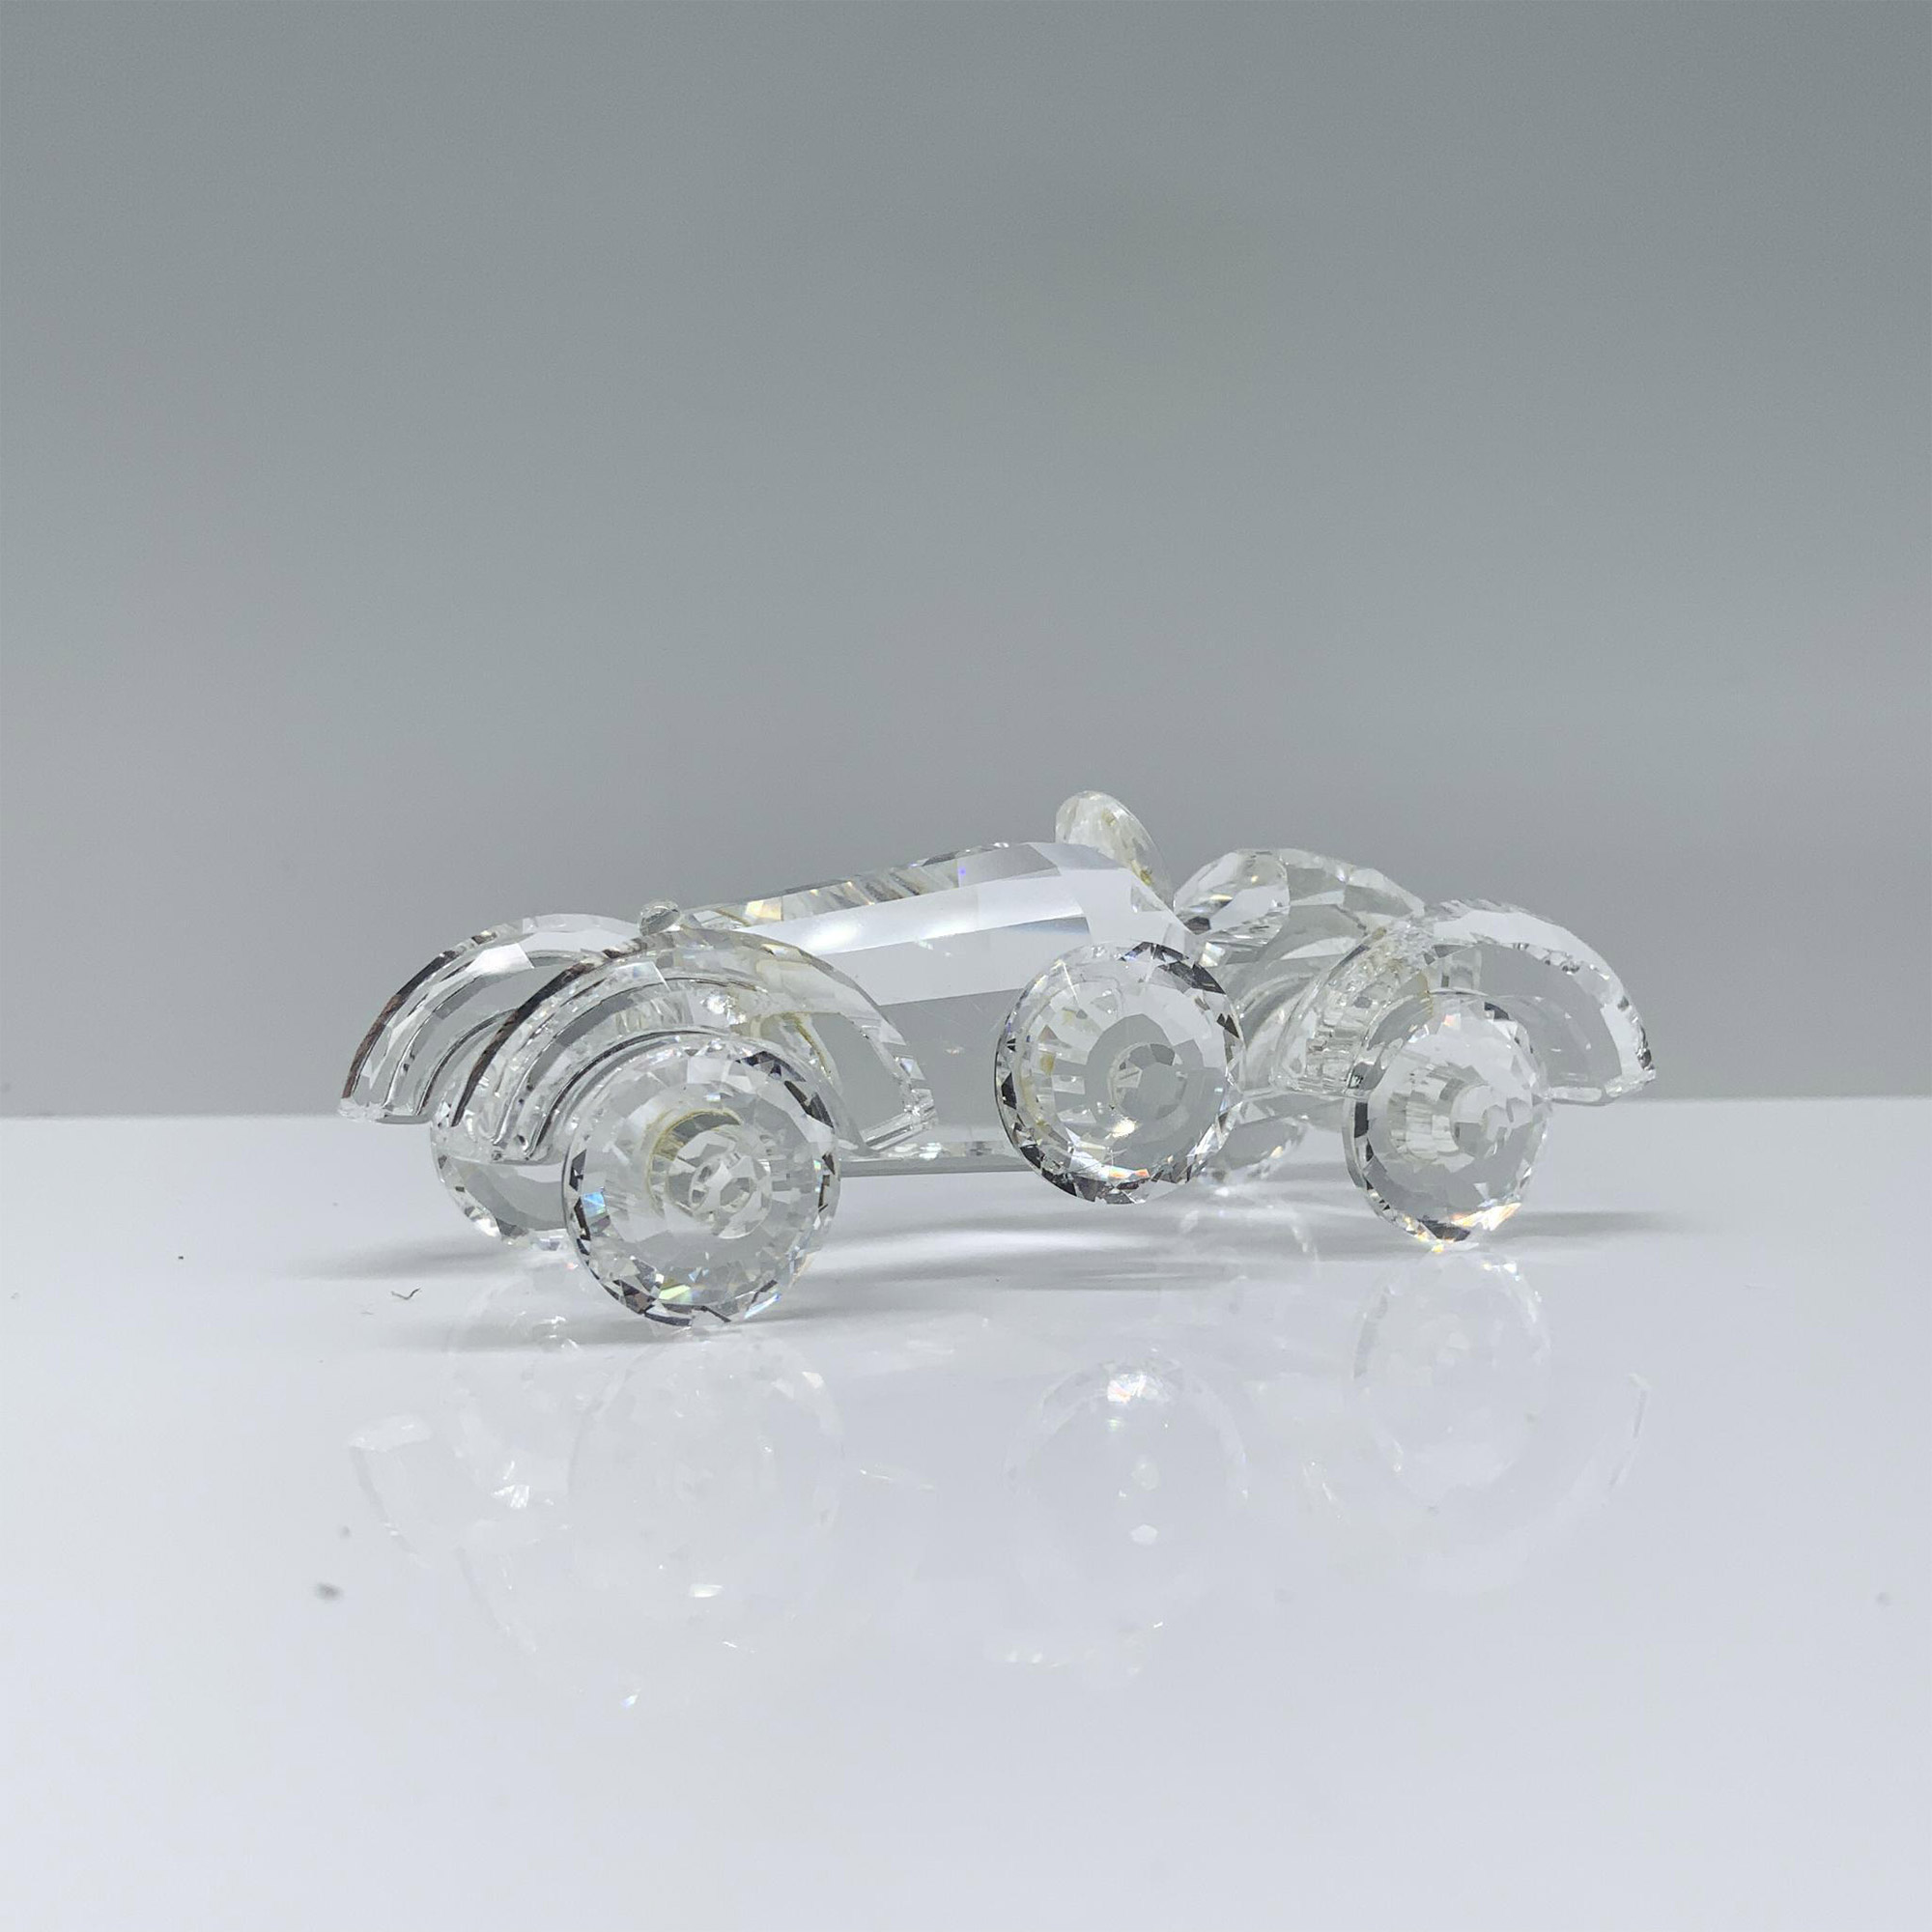 Swarovski Crystal Figurine, Old Timer Vintage Car 151753 - Image 2 of 4